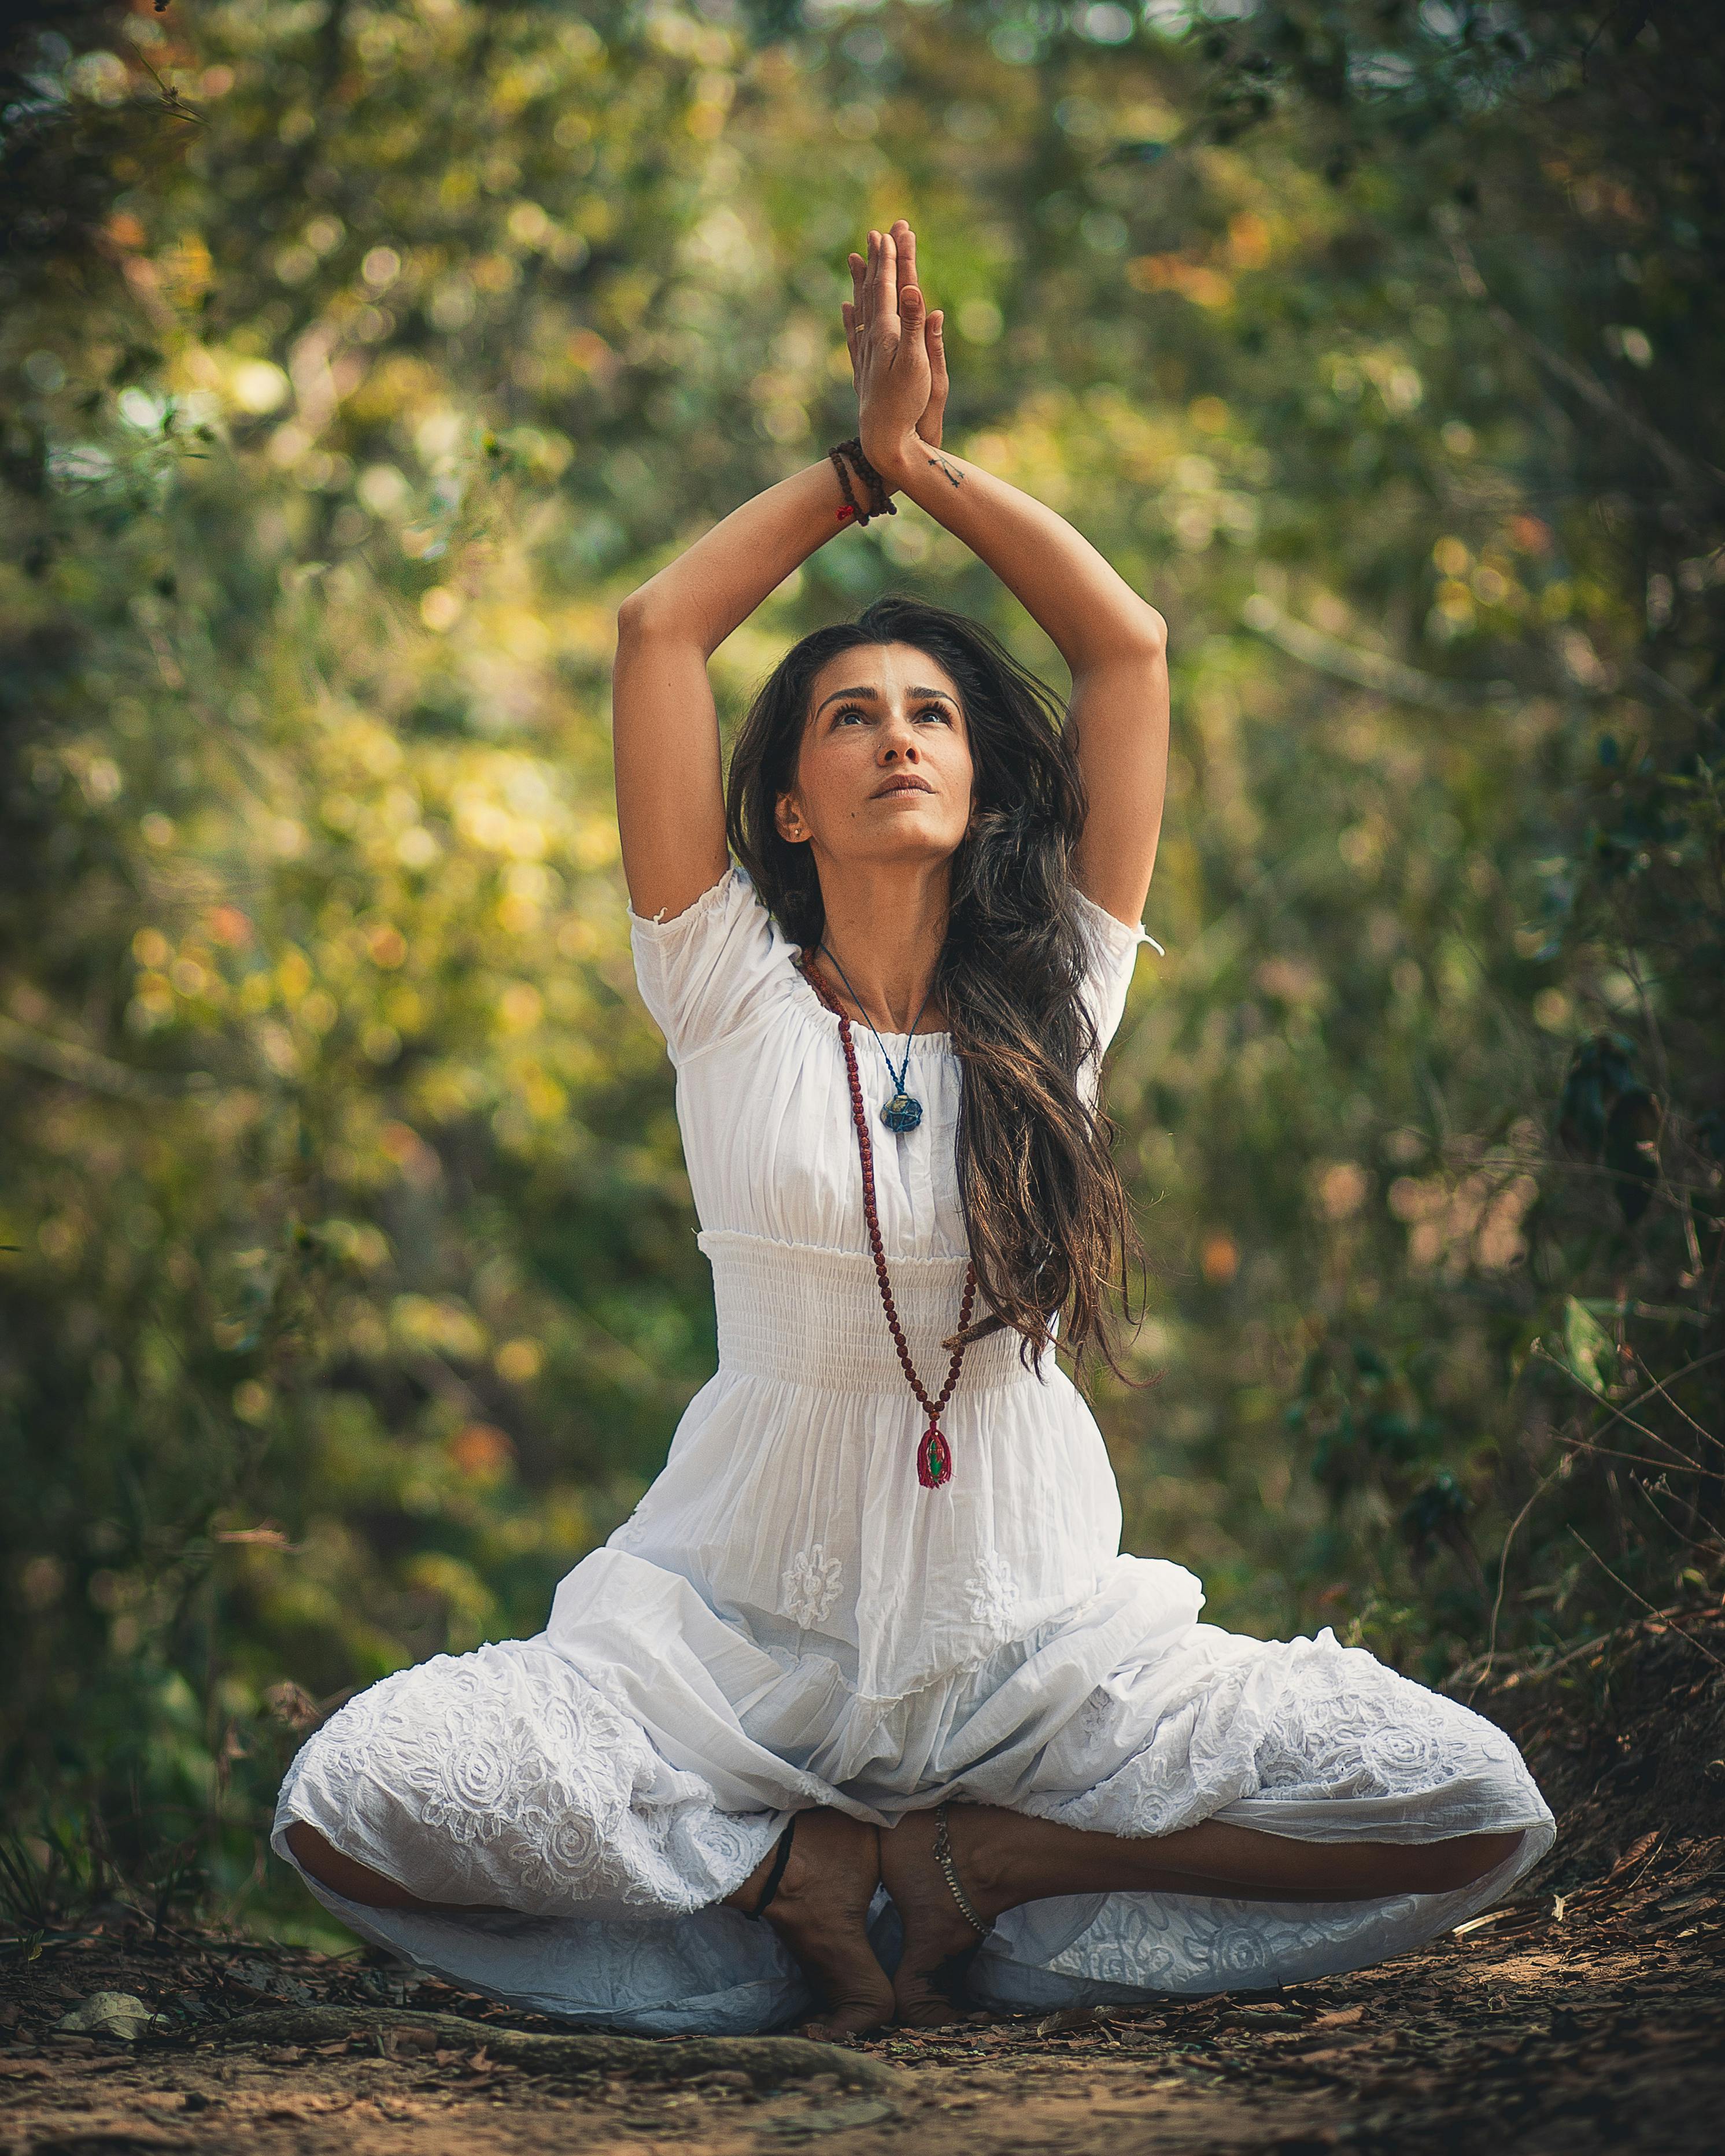 22 800+ Femme Yoga Fond Blanc Photos, taleaux et images libre de